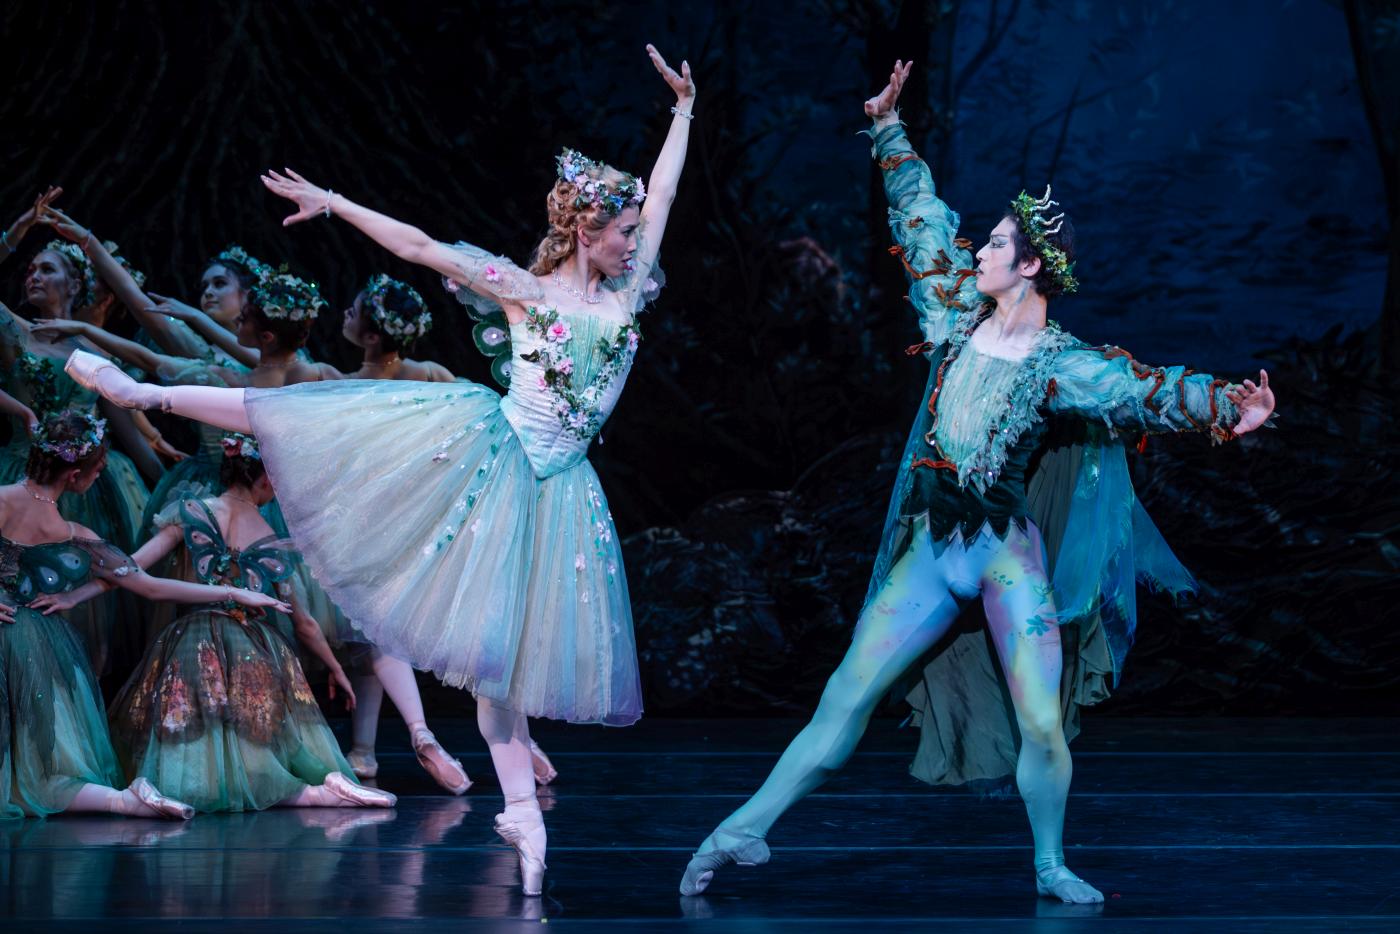 8. A.Kondo (Titania), C.Guo (Oberon), and ensemble, “The Dream” by F.Ashton, The Australian Ballet 2023 © D.Boud